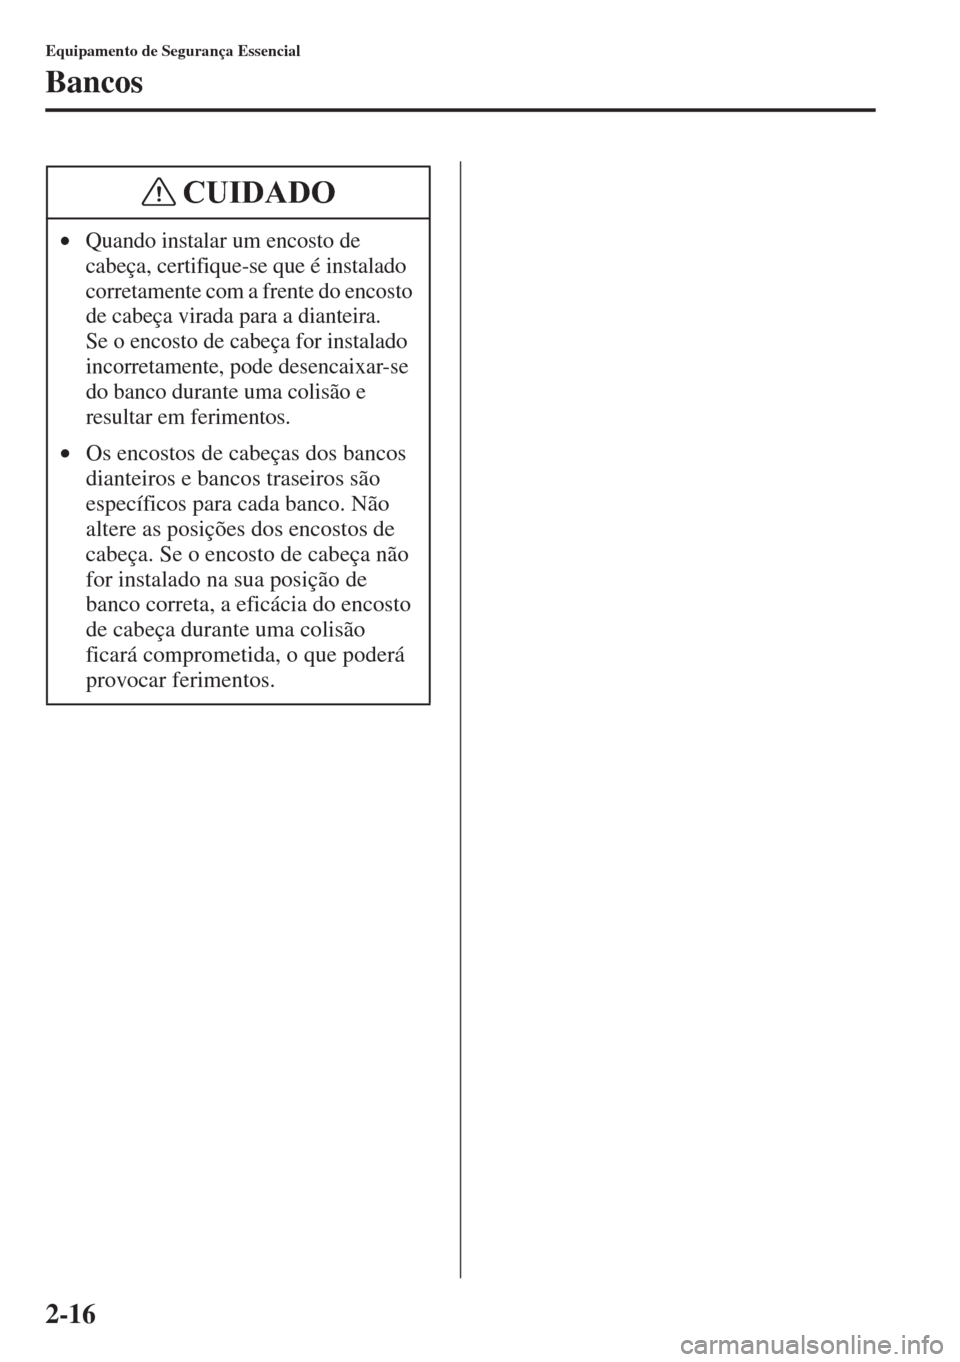 MAZDA MODEL CX-5 2015  Manual do proprietário (in Portuguese) 2-16
Equipamento de Segurança Essencial
Bancos
•Quando instalar um encosto de 
cabeça, certifique-se que é instalado 
corretamente com a frente do encosto 
de cabeça virada para a dianteira. 
Se